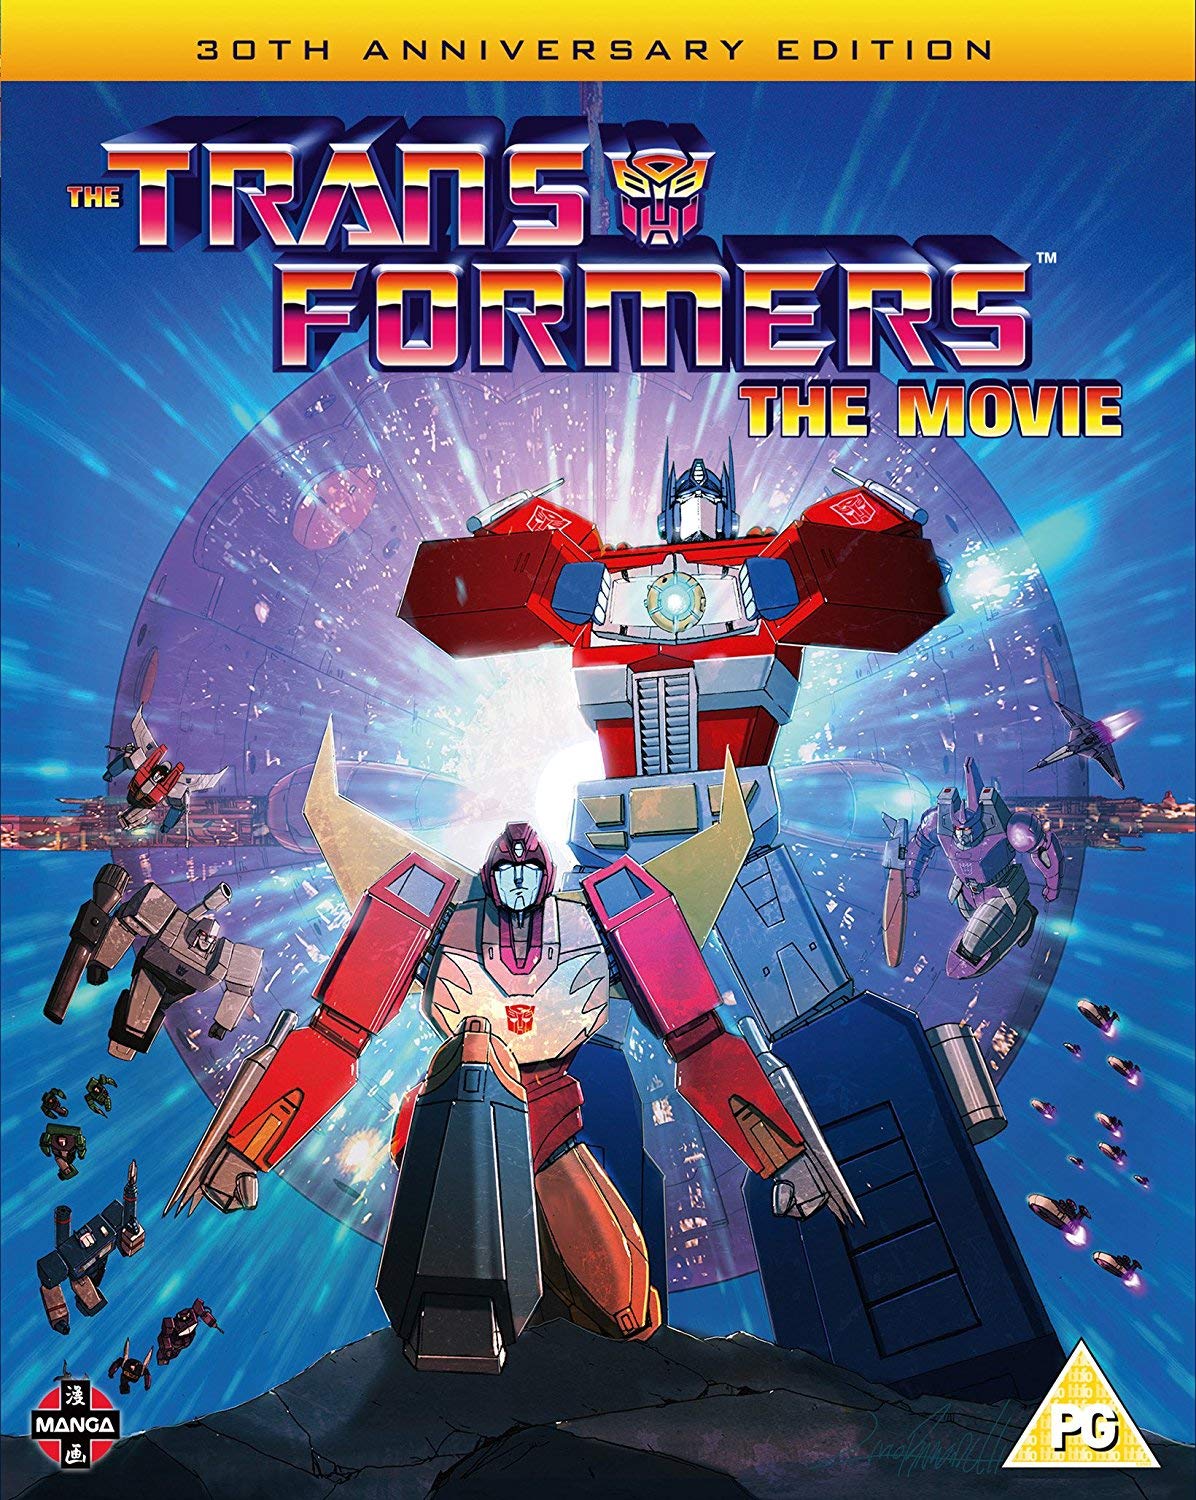 Nhân dịp sinh nhật lần thứ 35, huyền thoại Transformers: The Movie tái xuất hứa hẹn công phá mọi màn ảnh - Ảnh 1.